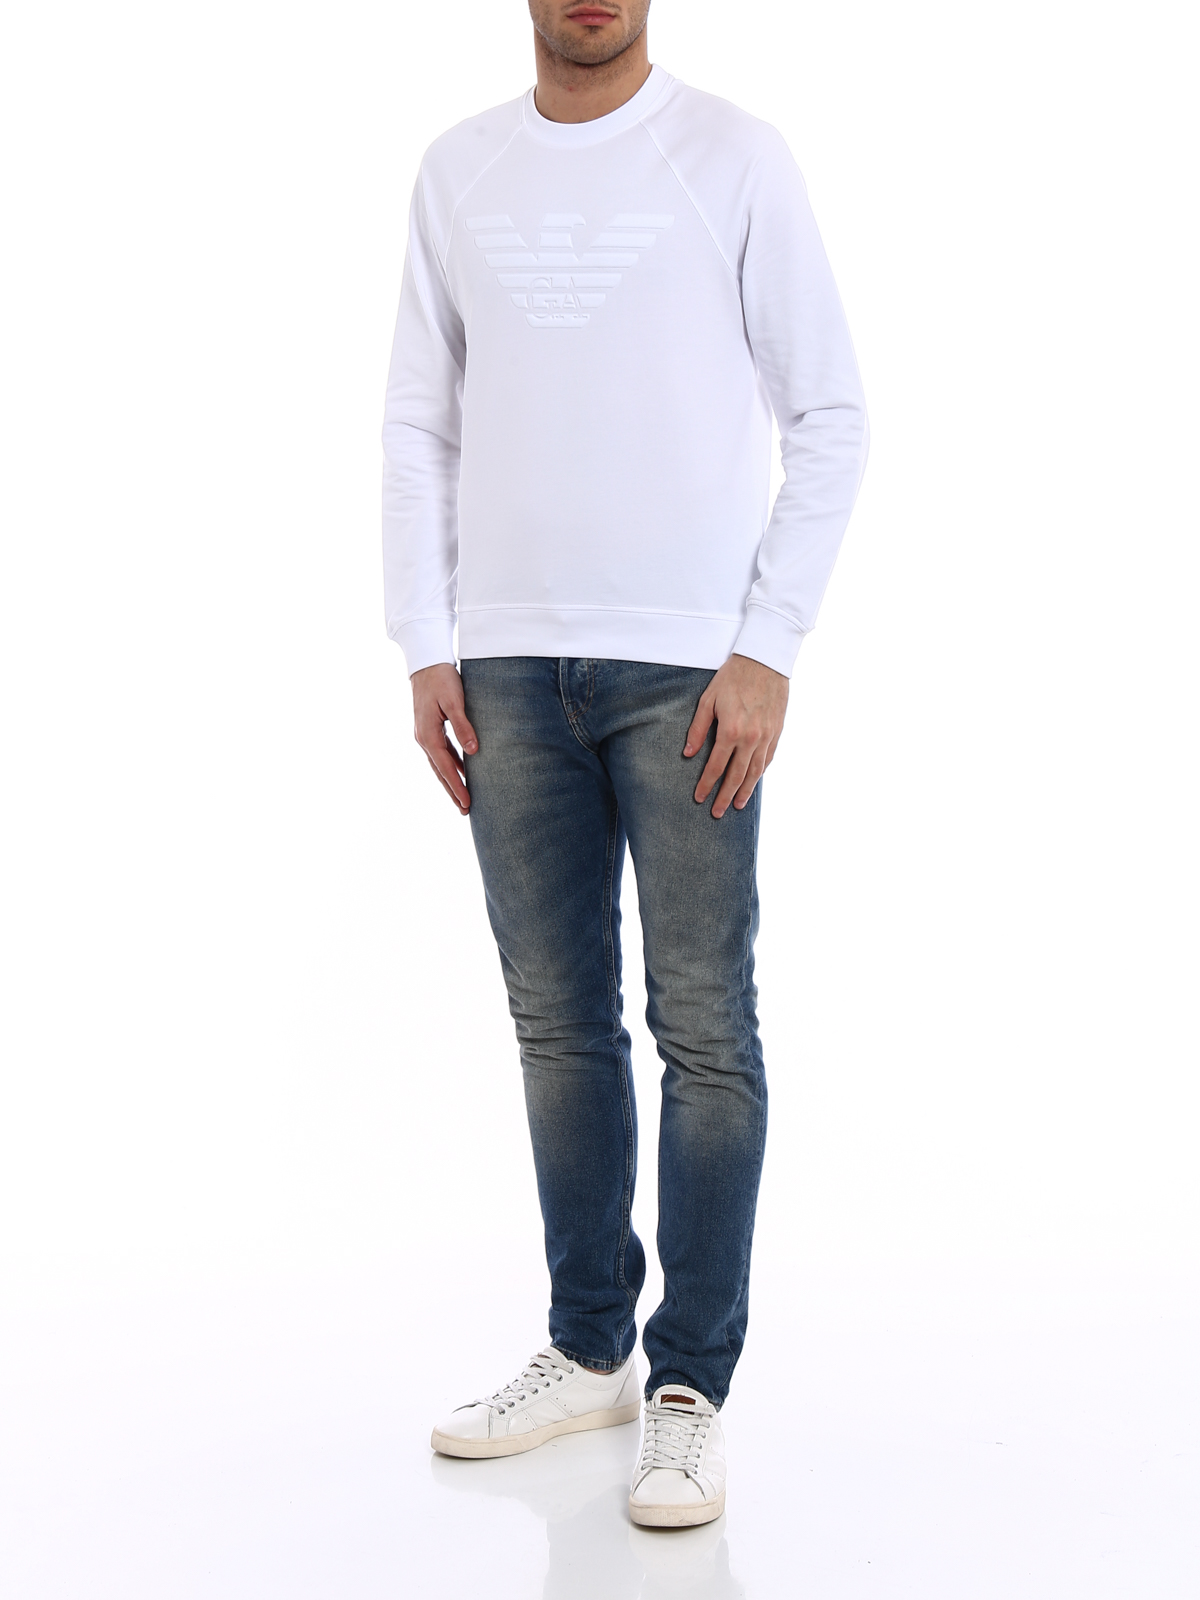 white armani sweatshirt